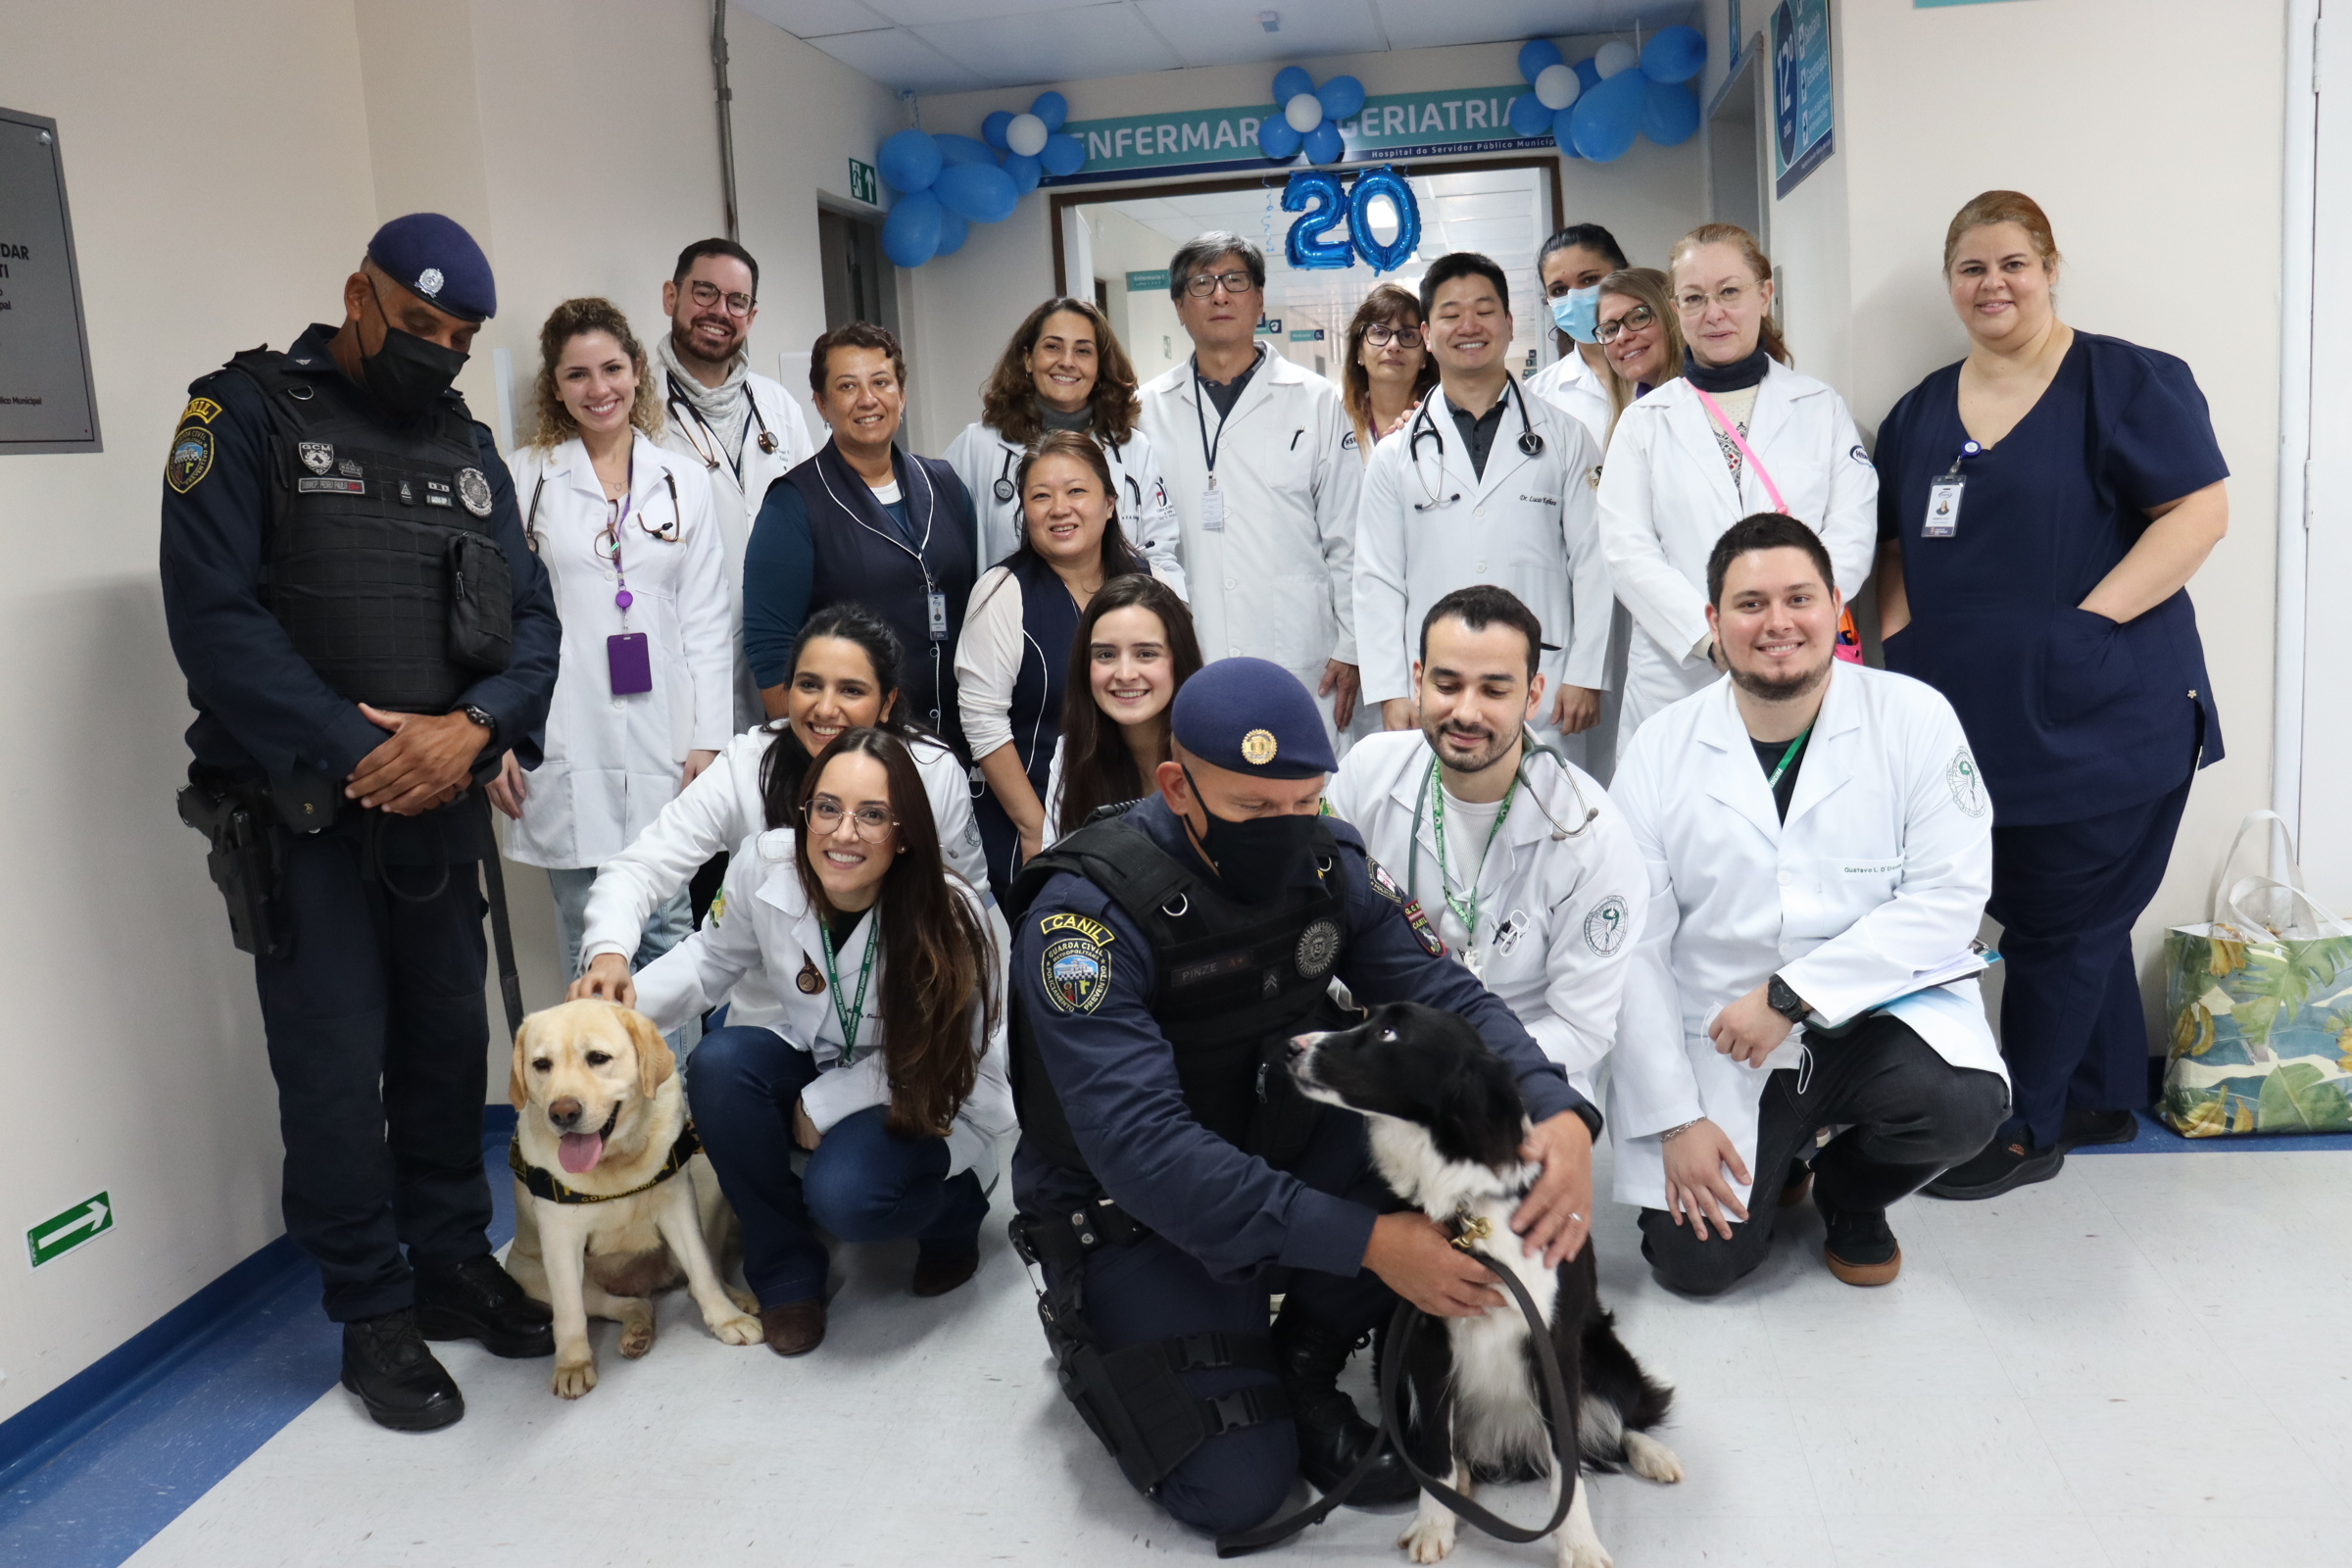 Fotografia do grupo de profissionais da equipe de Geriatria, com os guardas e com os cães da Guarda Civil Metropolitana (GCM).